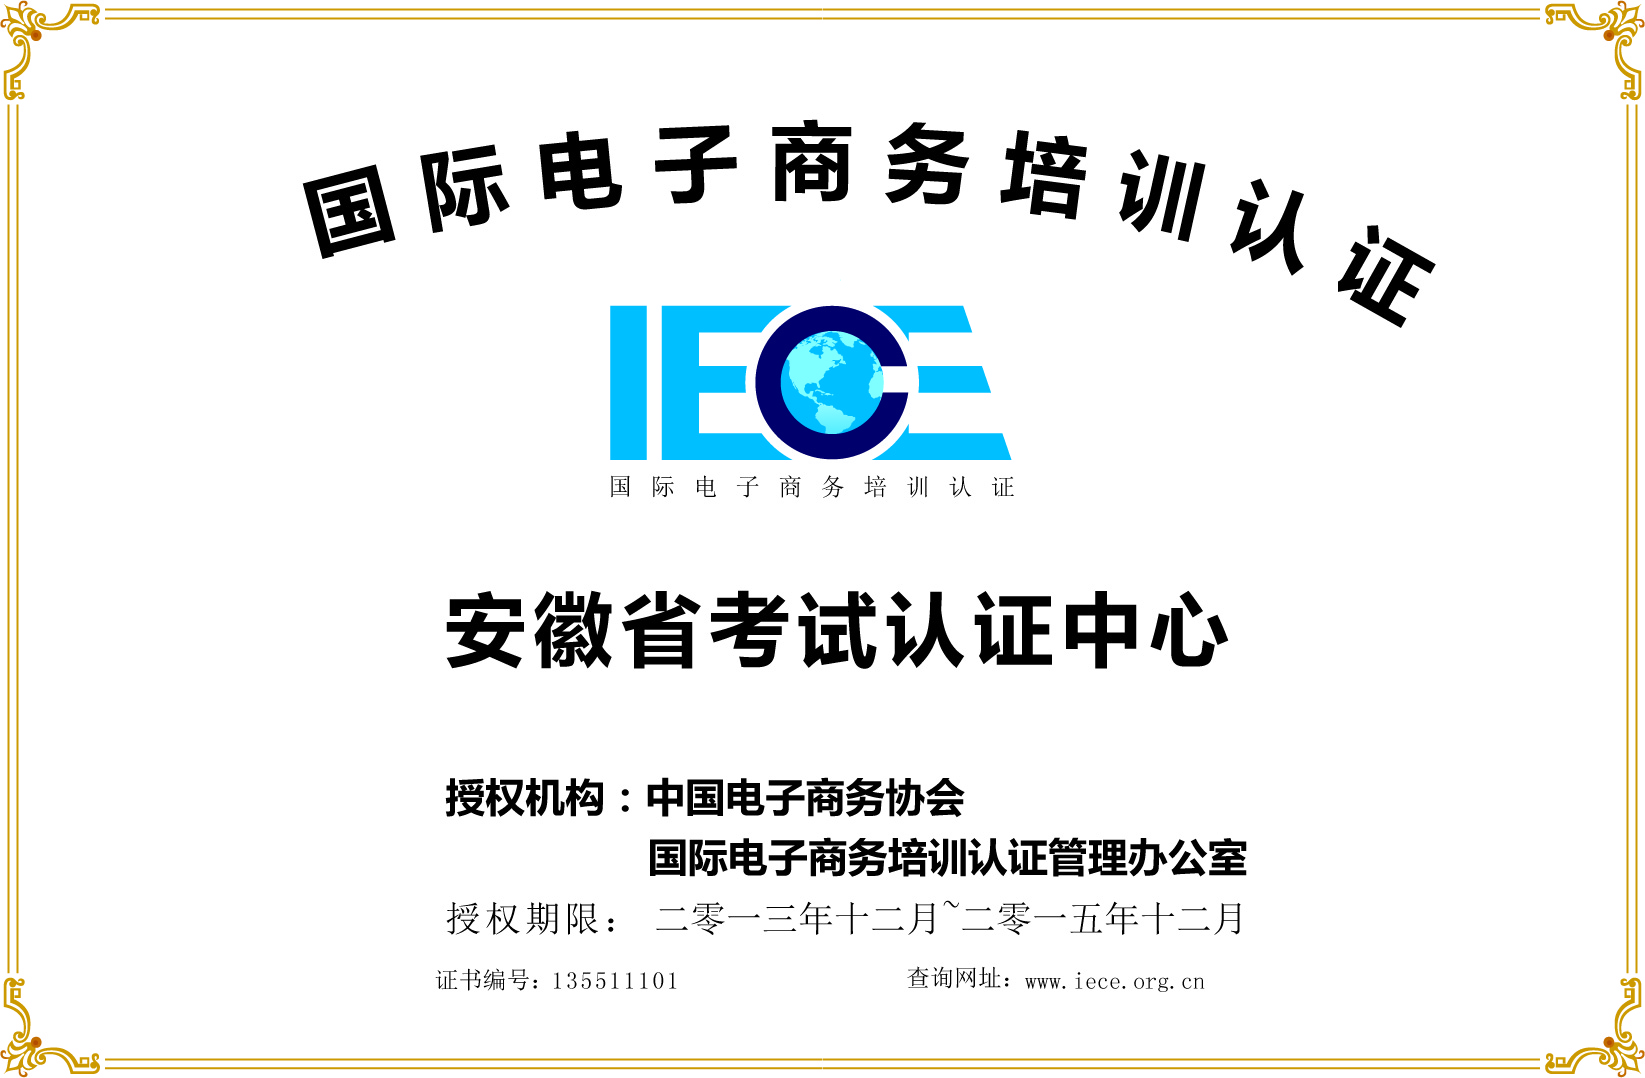 全国电子商务国际IECE认证安徽省考试培训学习中心